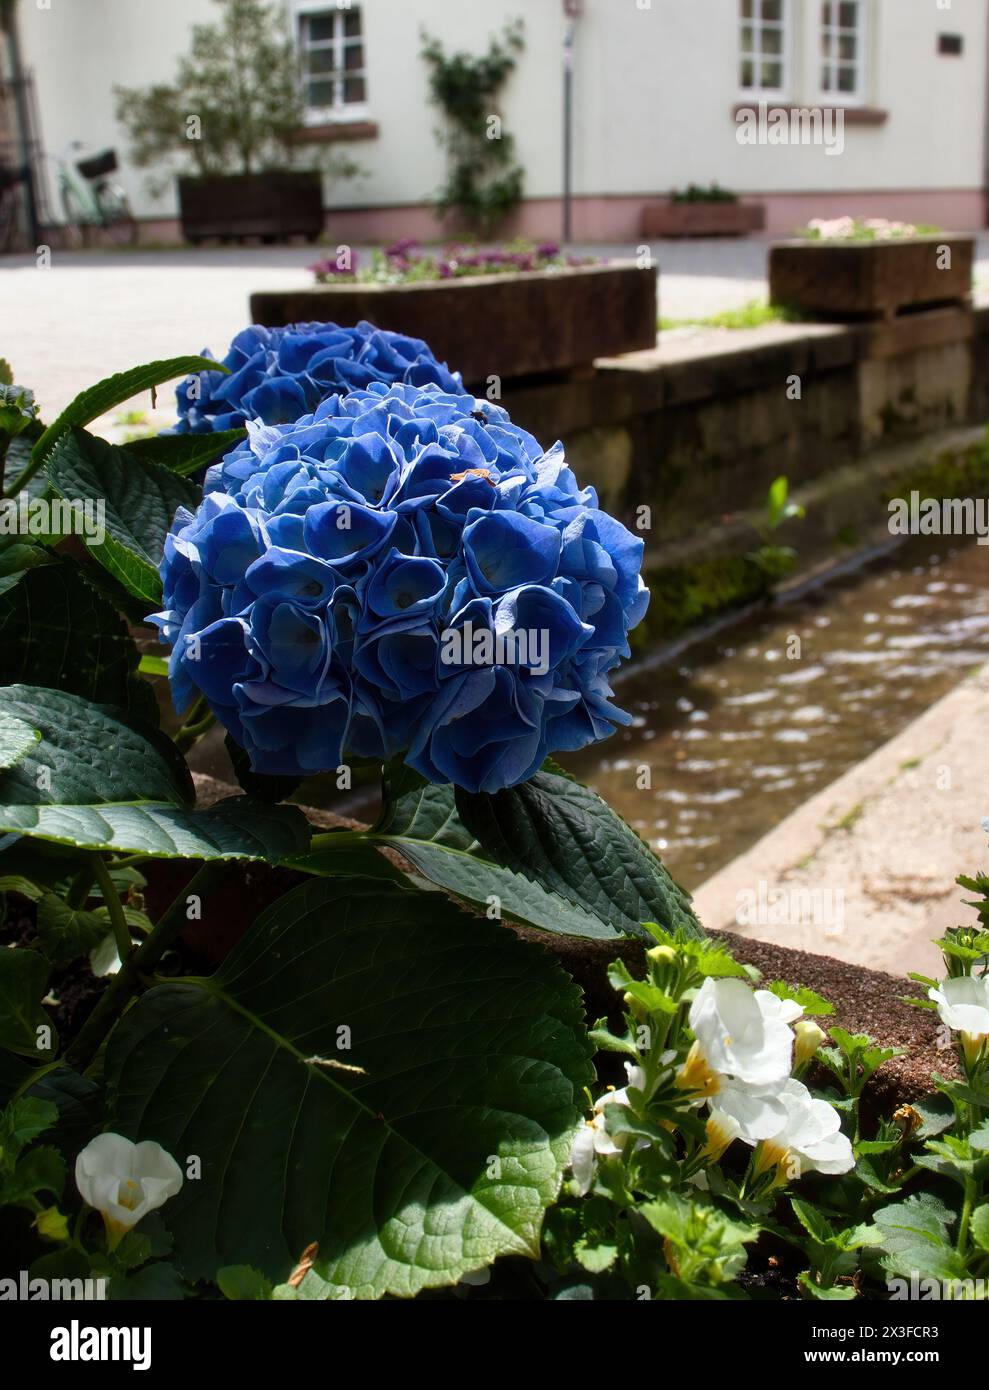 Weinheim, Allemagne - 19 mai 2021 : fleurs d'hortensia bleues poussant près de l'eau dans une rue de Weinheim, Allemagne. Banque D'Images